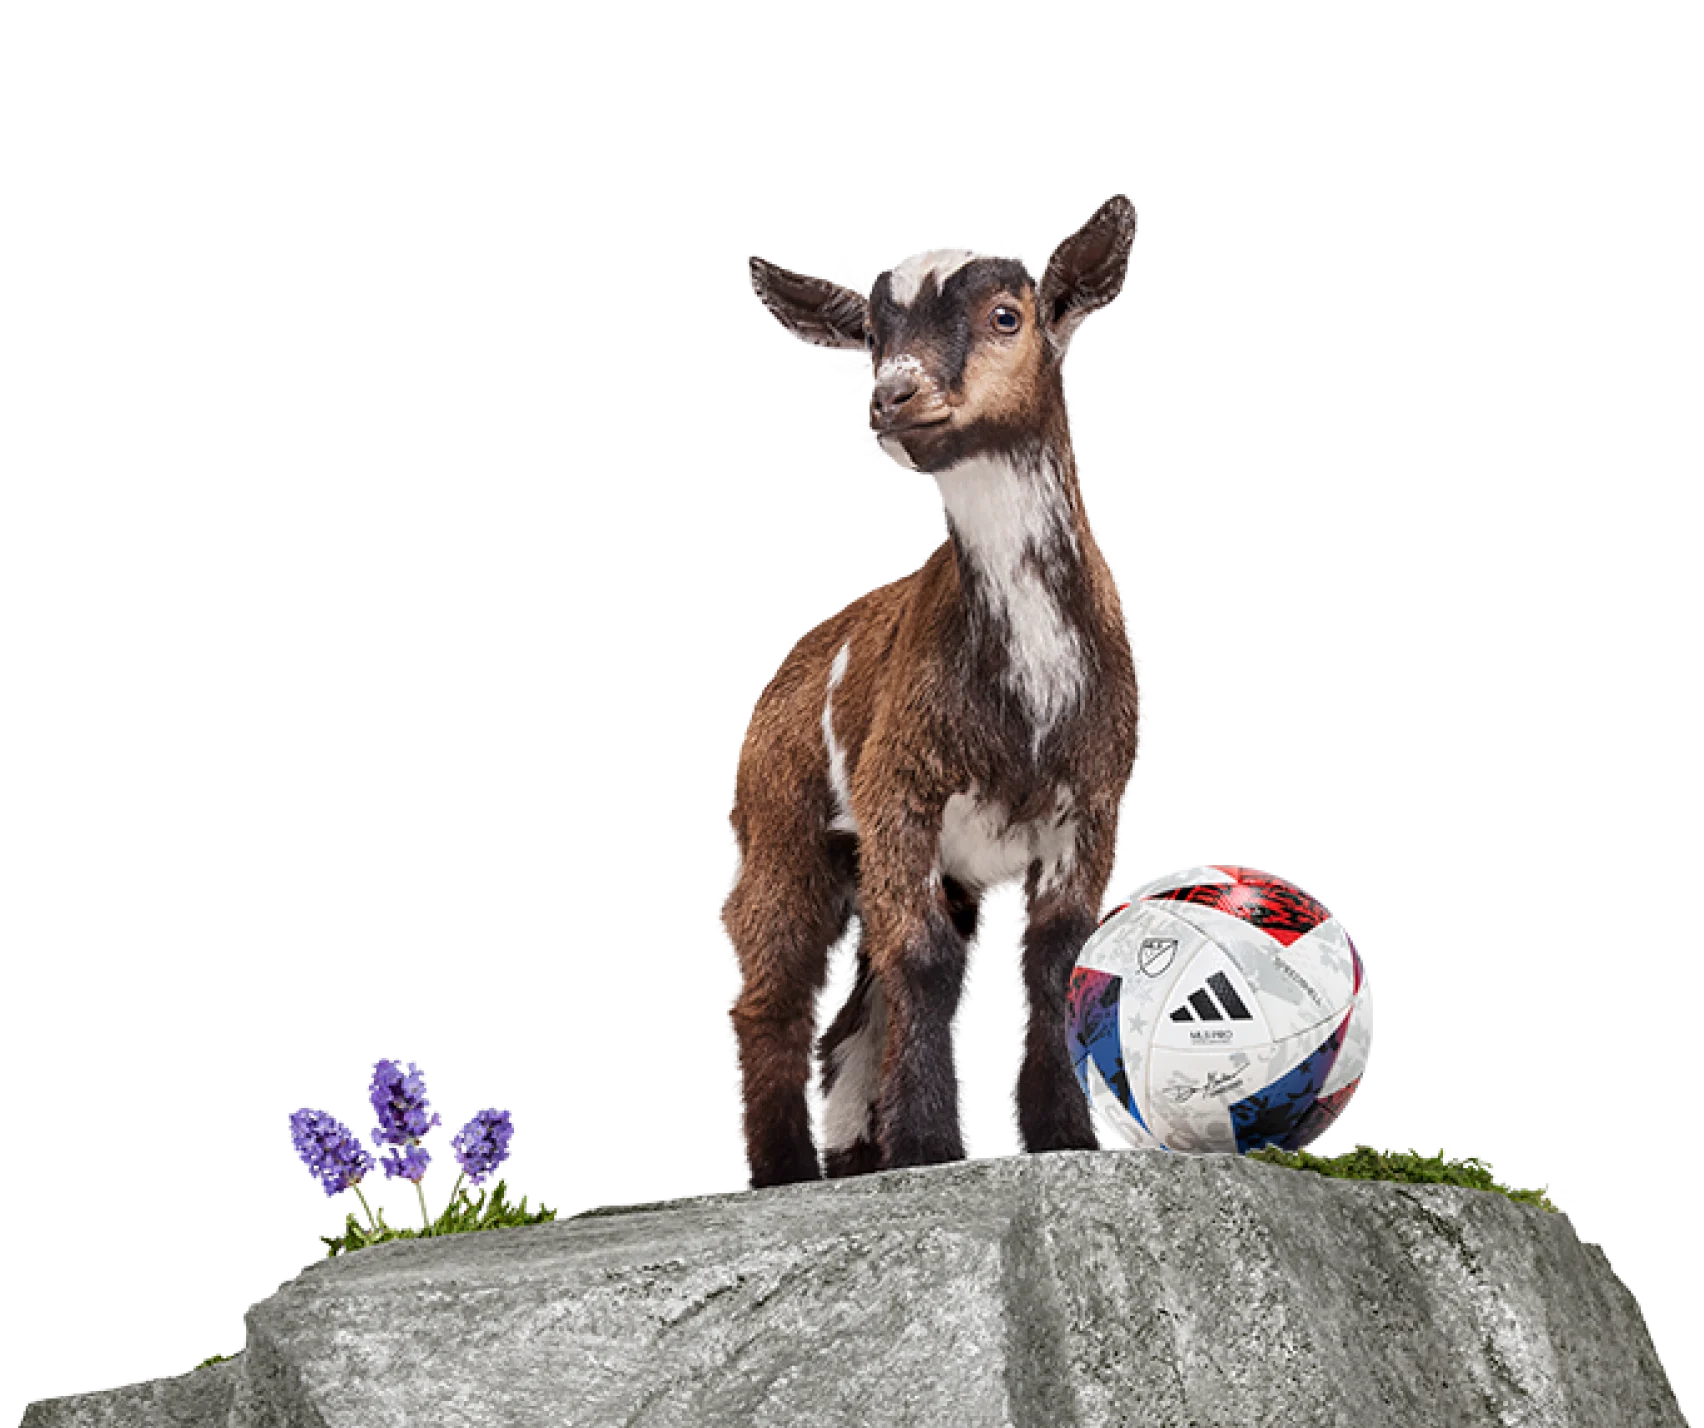 A TELUS goat standing behind a soccer ball.